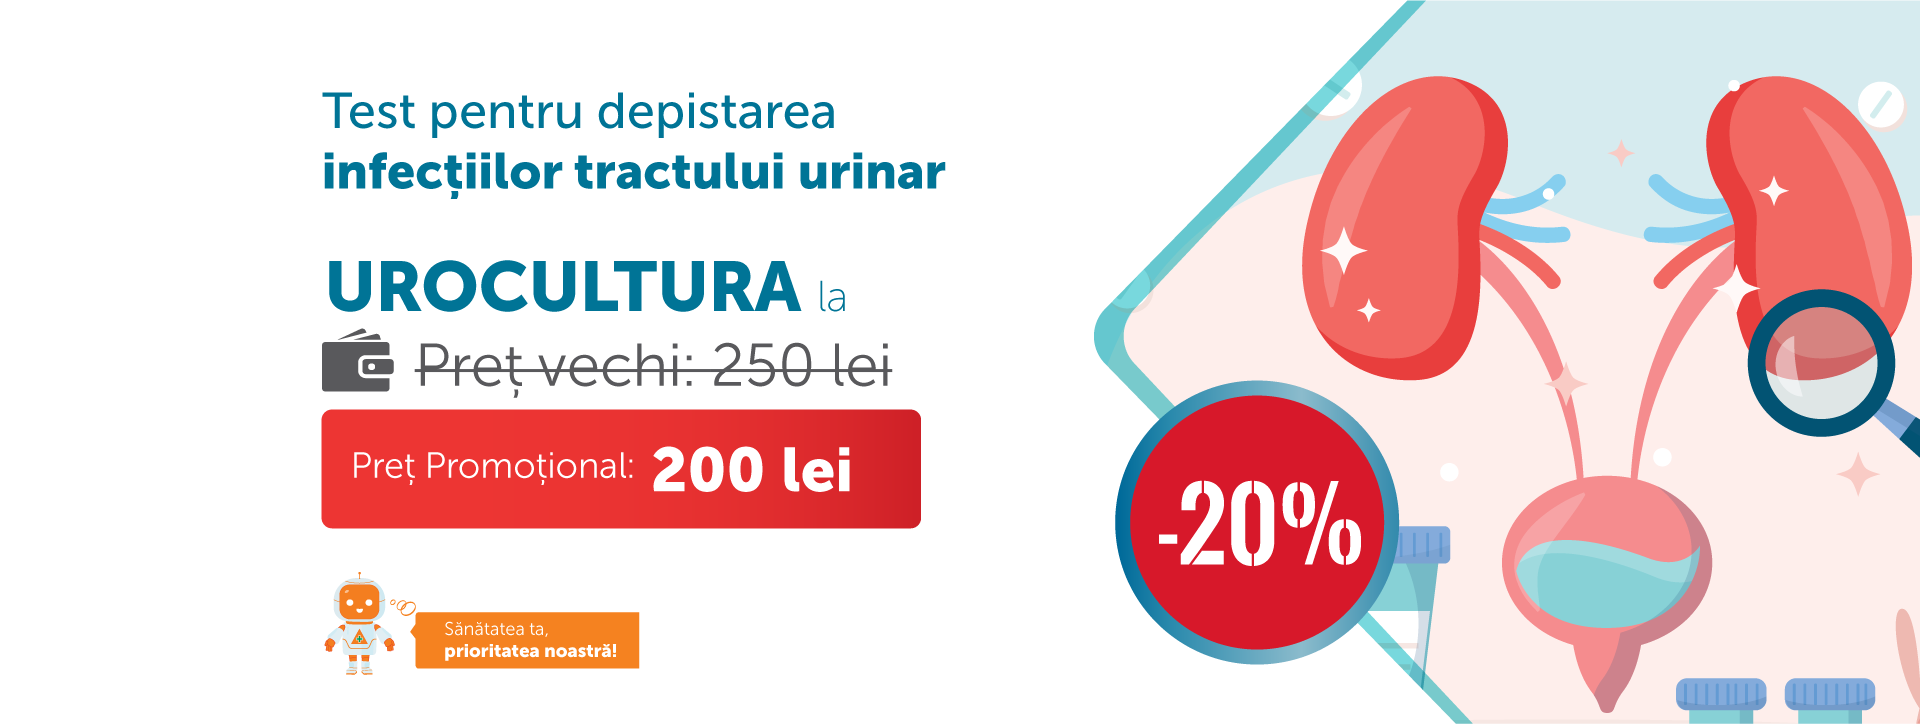 promo image Urocultura- test pentru depistarea infecțiilor tractului urinar